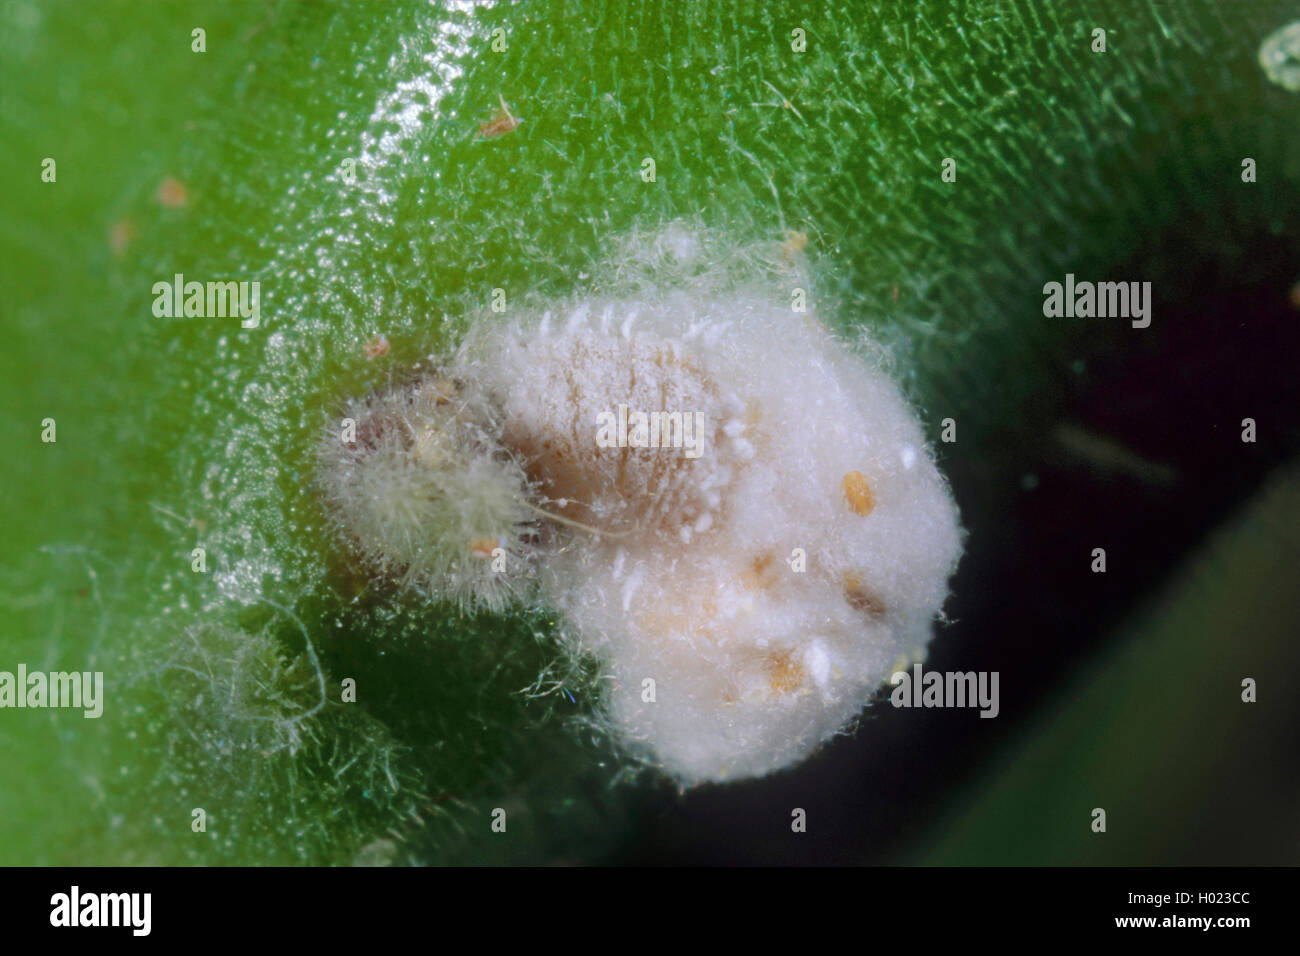 Citrus mealybug, Common mealybug, Citrus scale (Pseudococcus citri, Planococcus citri, Dactylopius citri), female Stock Photo